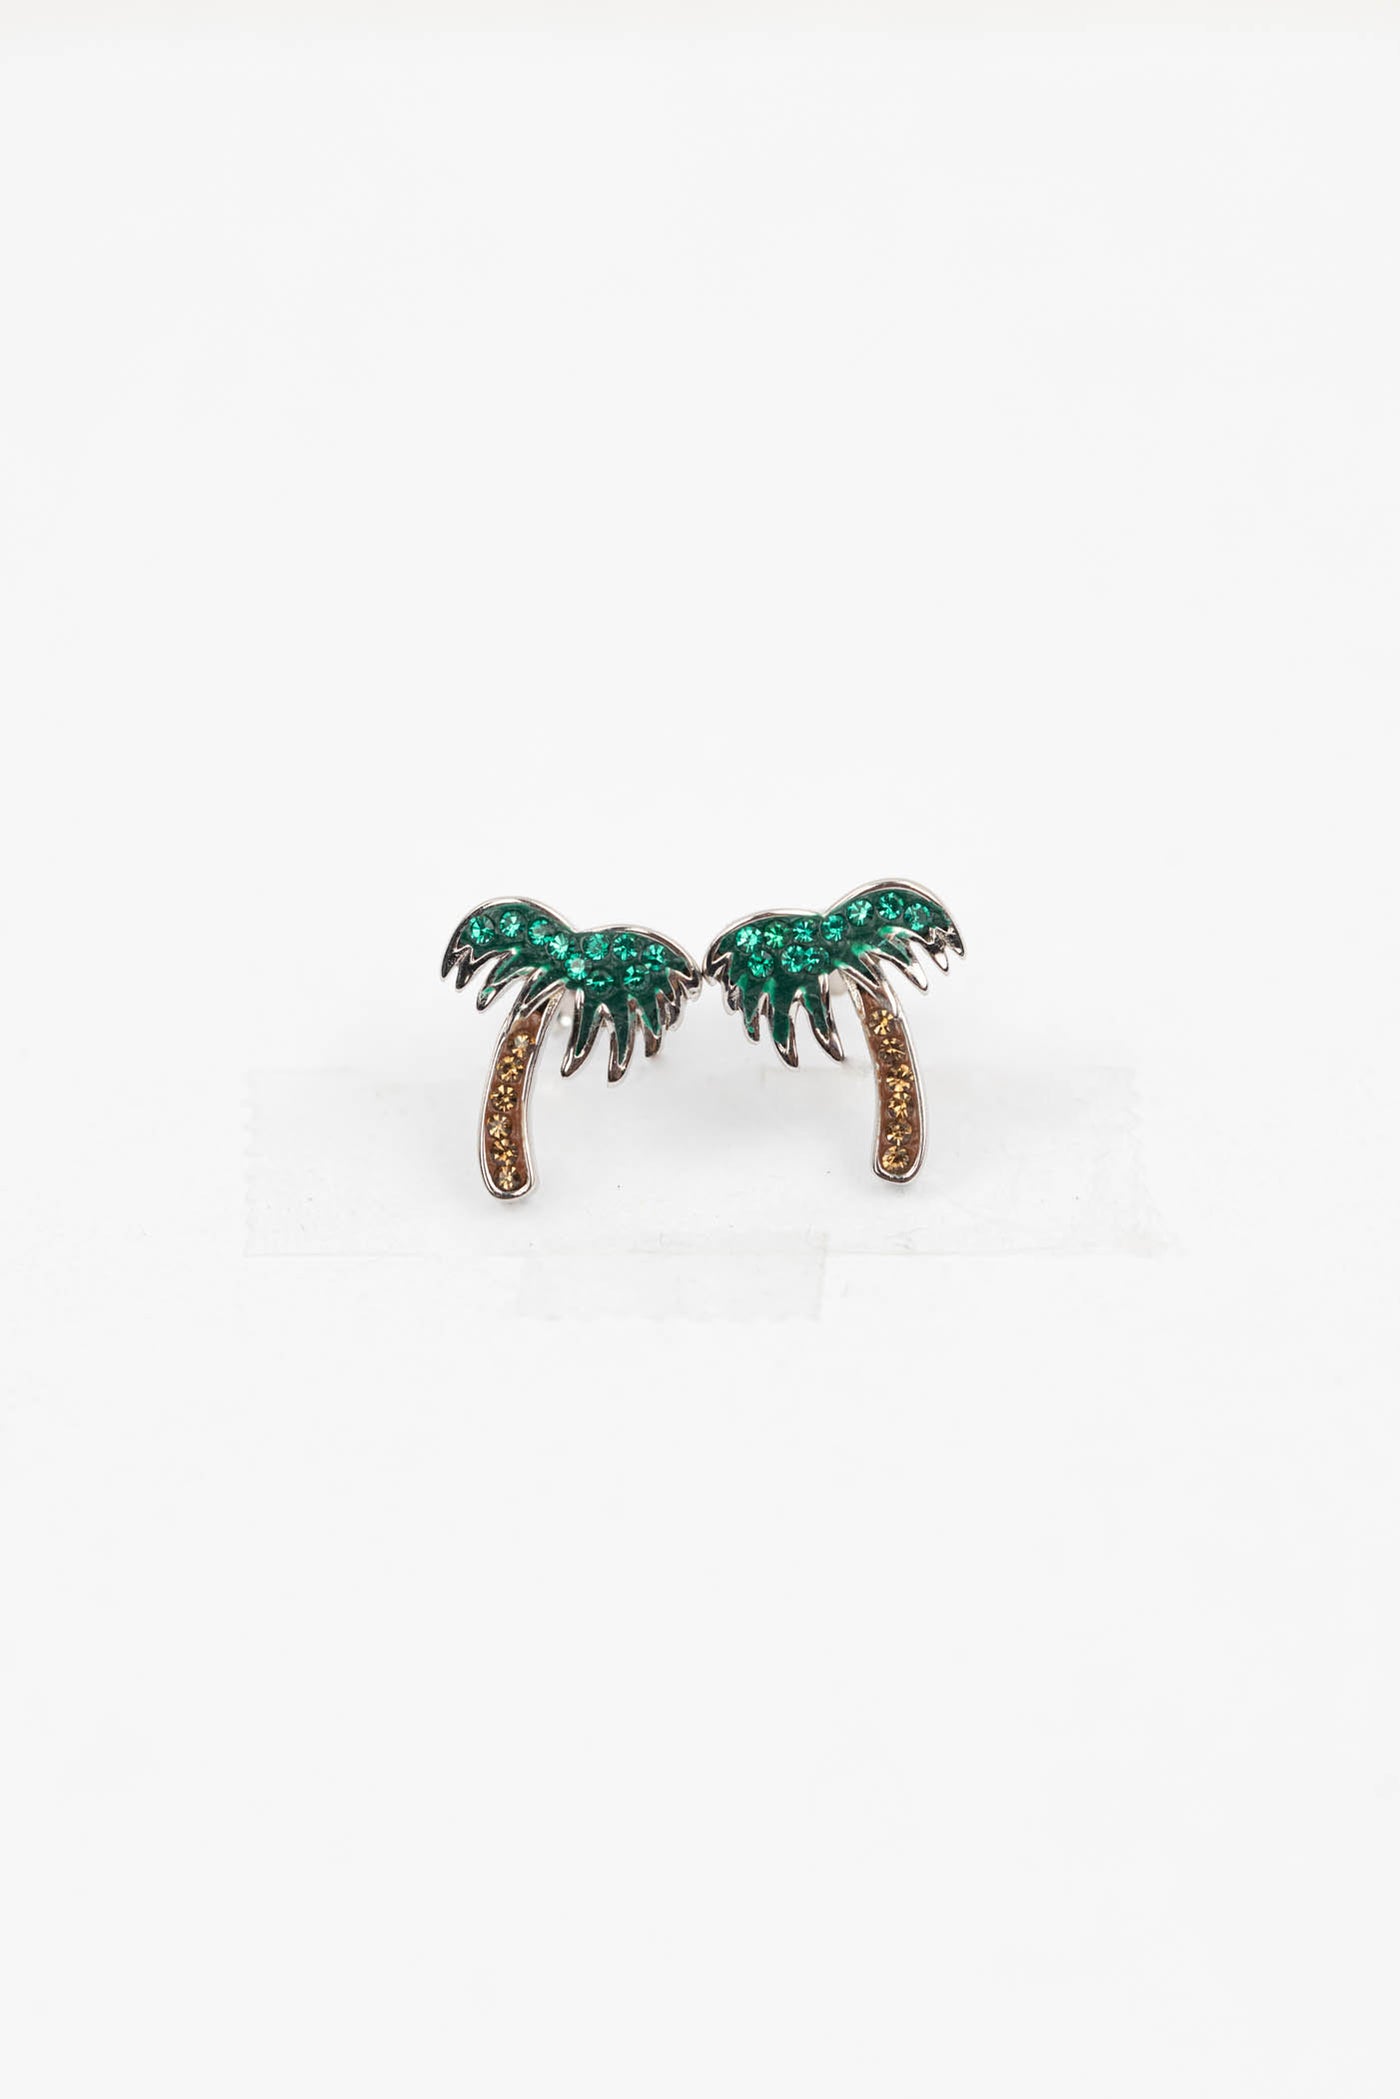 Palm Tree Crystal Sterling Silver Stud Earrings